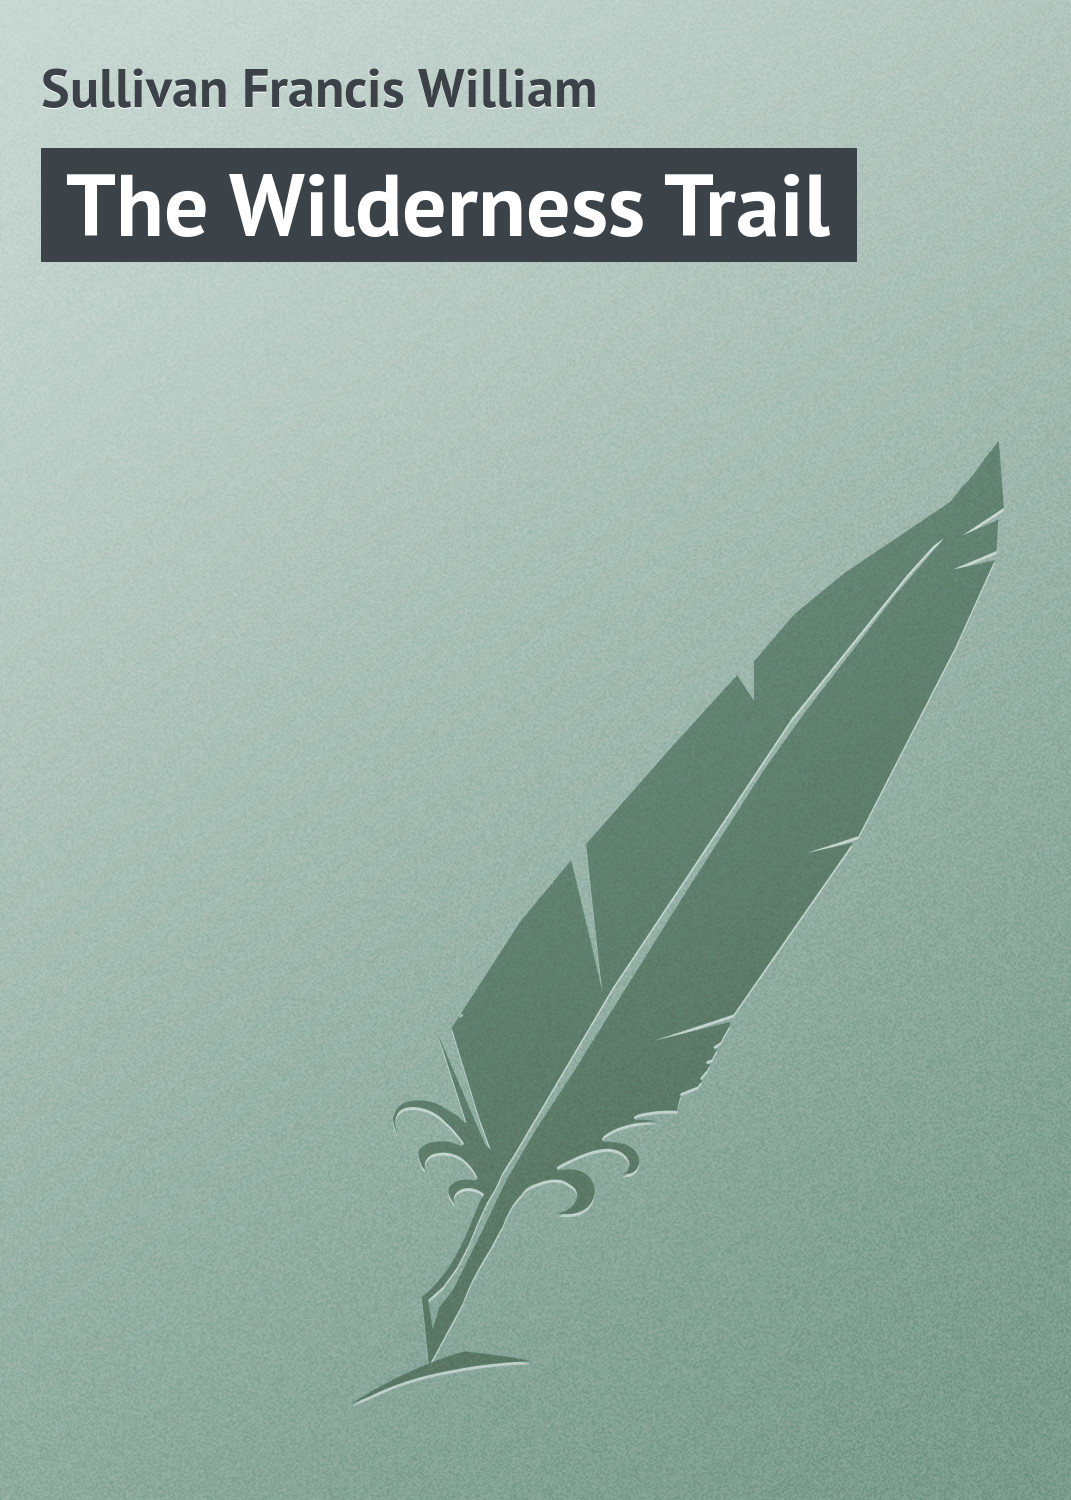 Книга The Wilderness Trail из серии , созданная Francis Sullivan, может относится к жанру Иностранные языки, Зарубежная классика. Стоимость электронной книги The Wilderness Trail с идентификатором 23159267 составляет 5.99 руб.